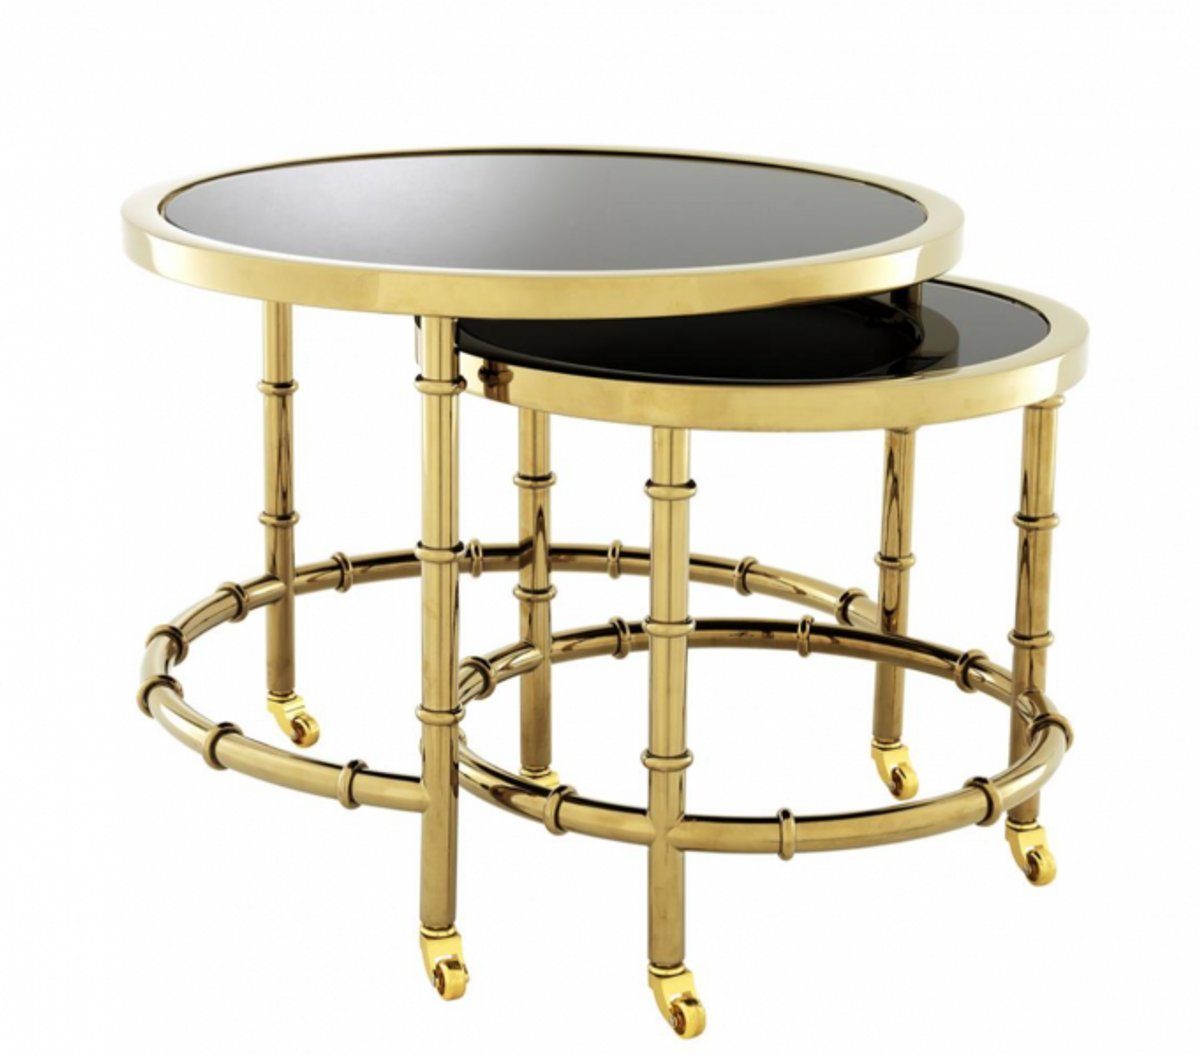 Casa Padrino Beistelltisch Luxus Art Deco Designer Beistelltisch 2er Set Gold mit schwarzem Glas - Luxus Hotel Tisch